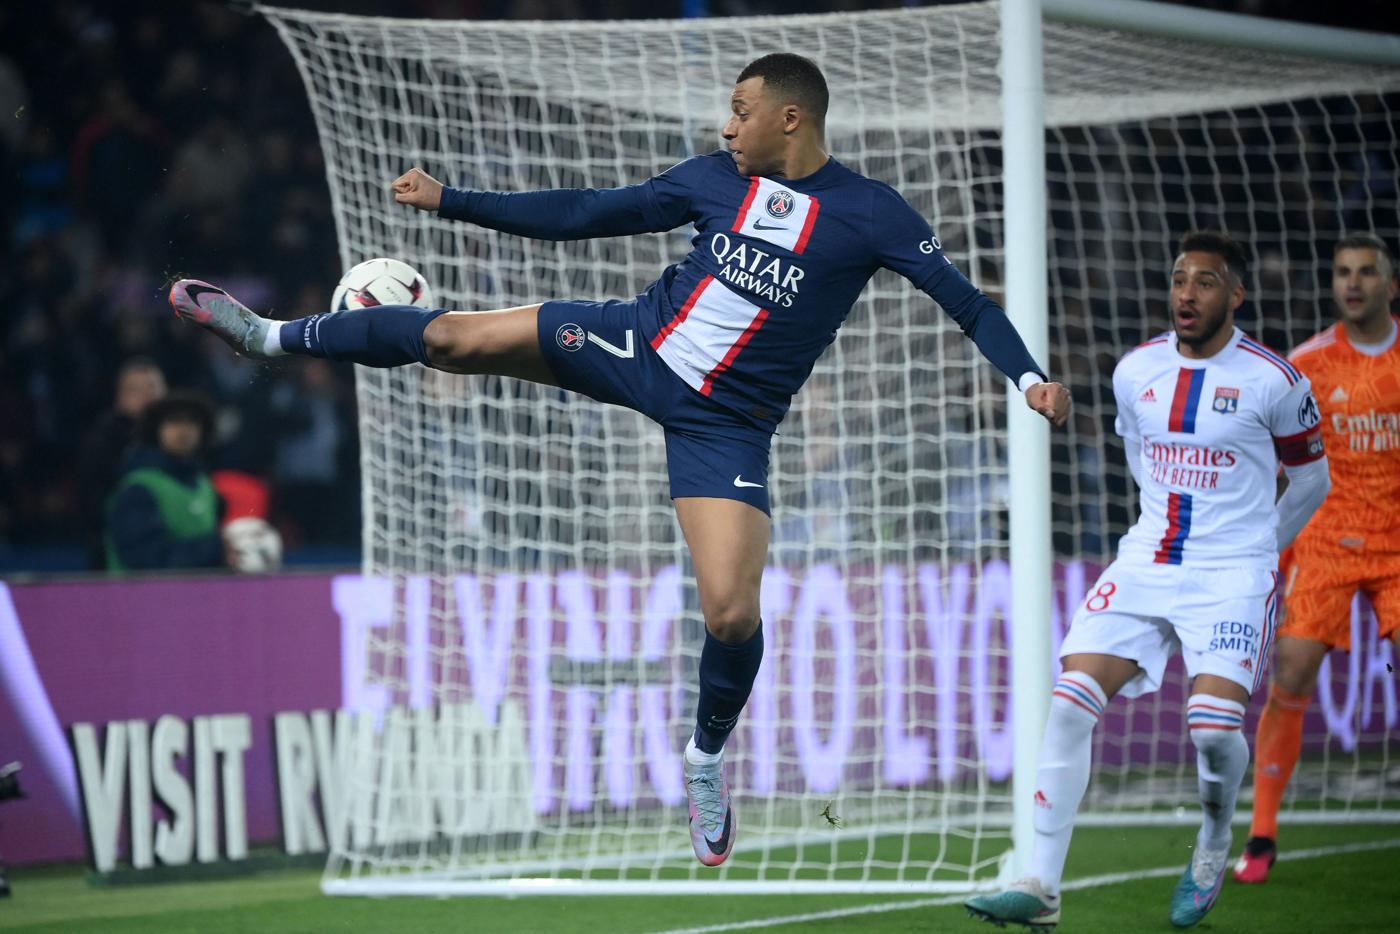 PSG - Lyon - 0:1. Französische Meisterschaft, 29. Runde. Spielbericht, Statistiken